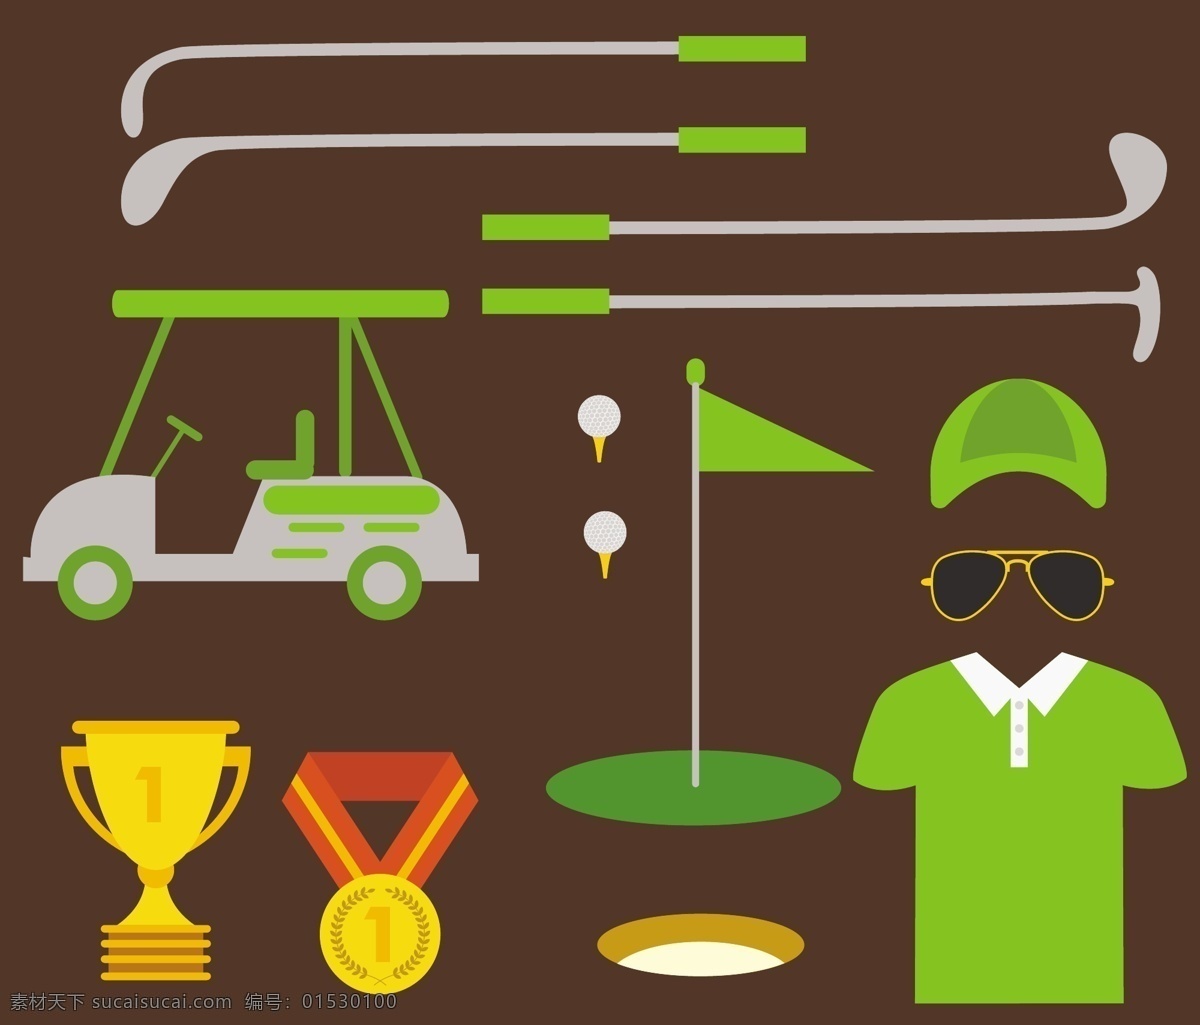 高尔夫 元素 各种 颜色 符号 装饰 比赛 矢量 背景 图标 球杆 帽子 车 奖杯 旗帜 衣服 眼镜 球赛 golf比赛 矢量背景